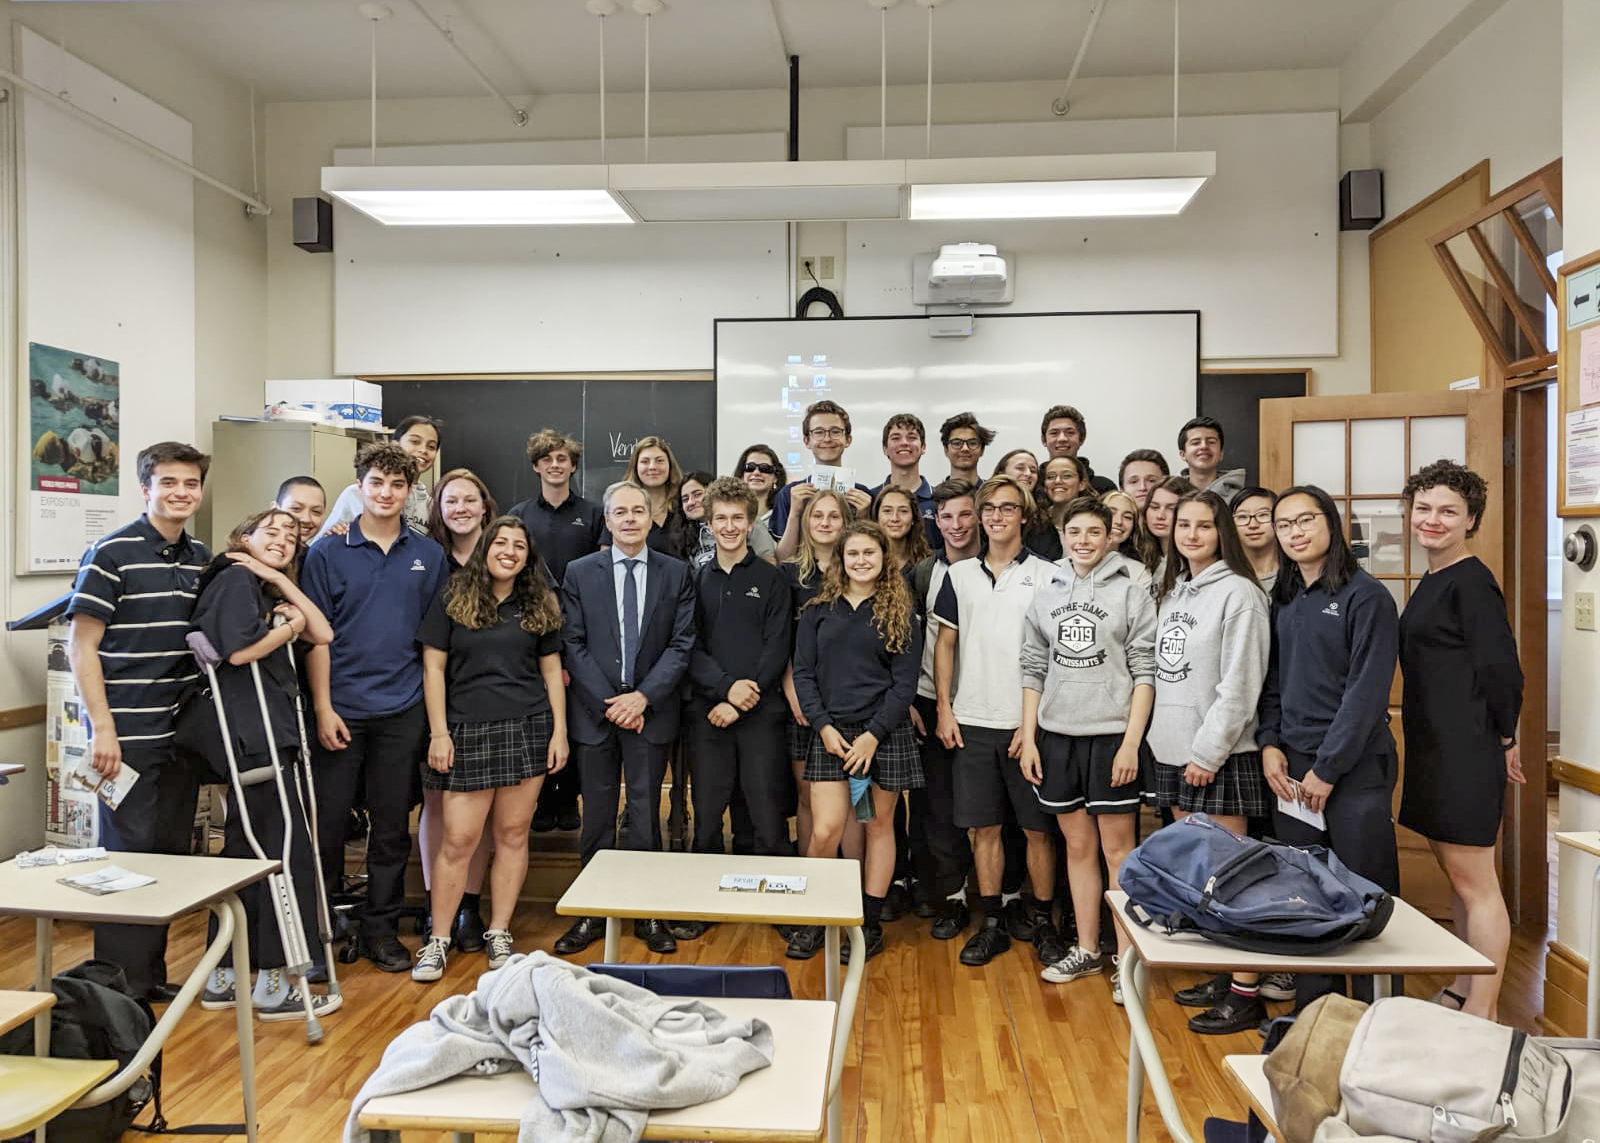 Le vendredi 31 mai 2019 — Le sénateur Pierre J. Dalphond rencontre des étudiants du 5e secondaire au Collège Notre-Dame à Montréal, Québec. Le sénateur a répondu aux questions pertinentes des étudiants sur le rôle du Sénat.